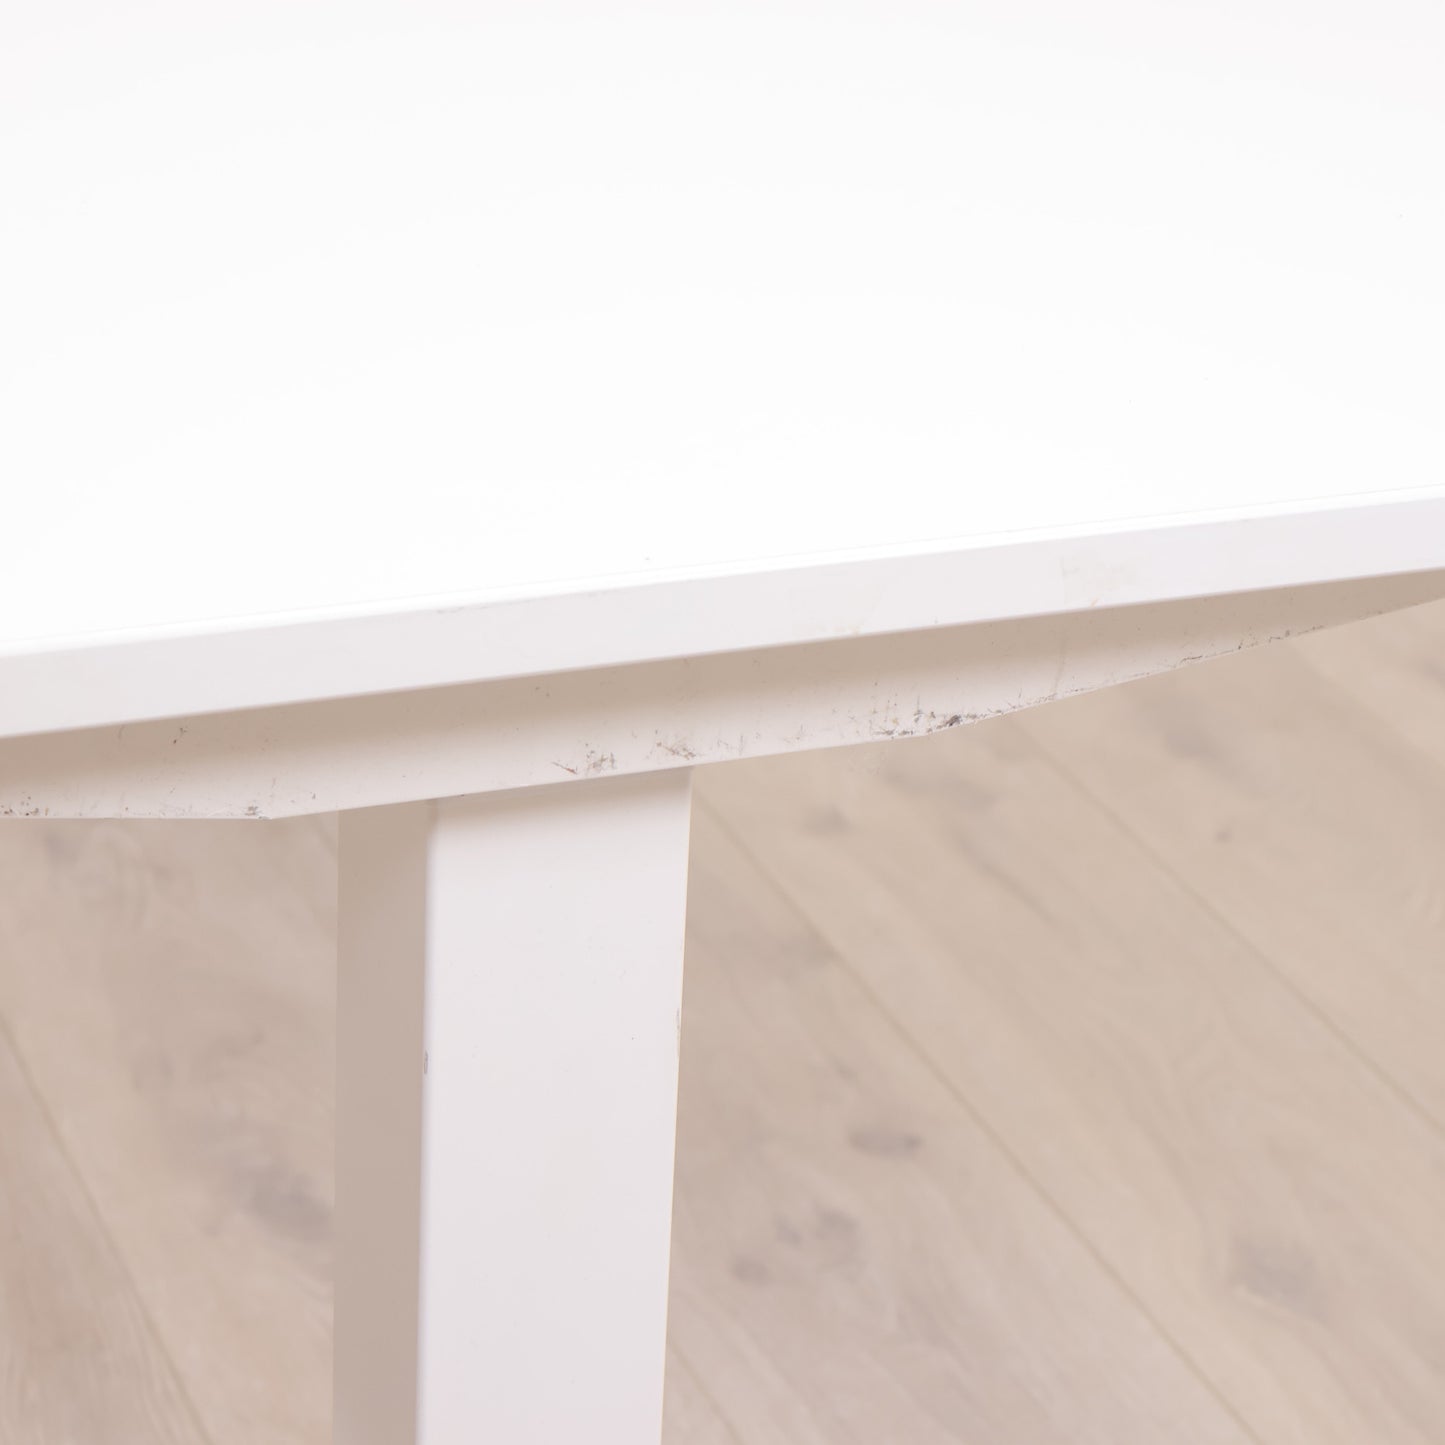 180x90 cm, Helhvit Kinnarps elektrisk hev/senk skrivebord med magebue